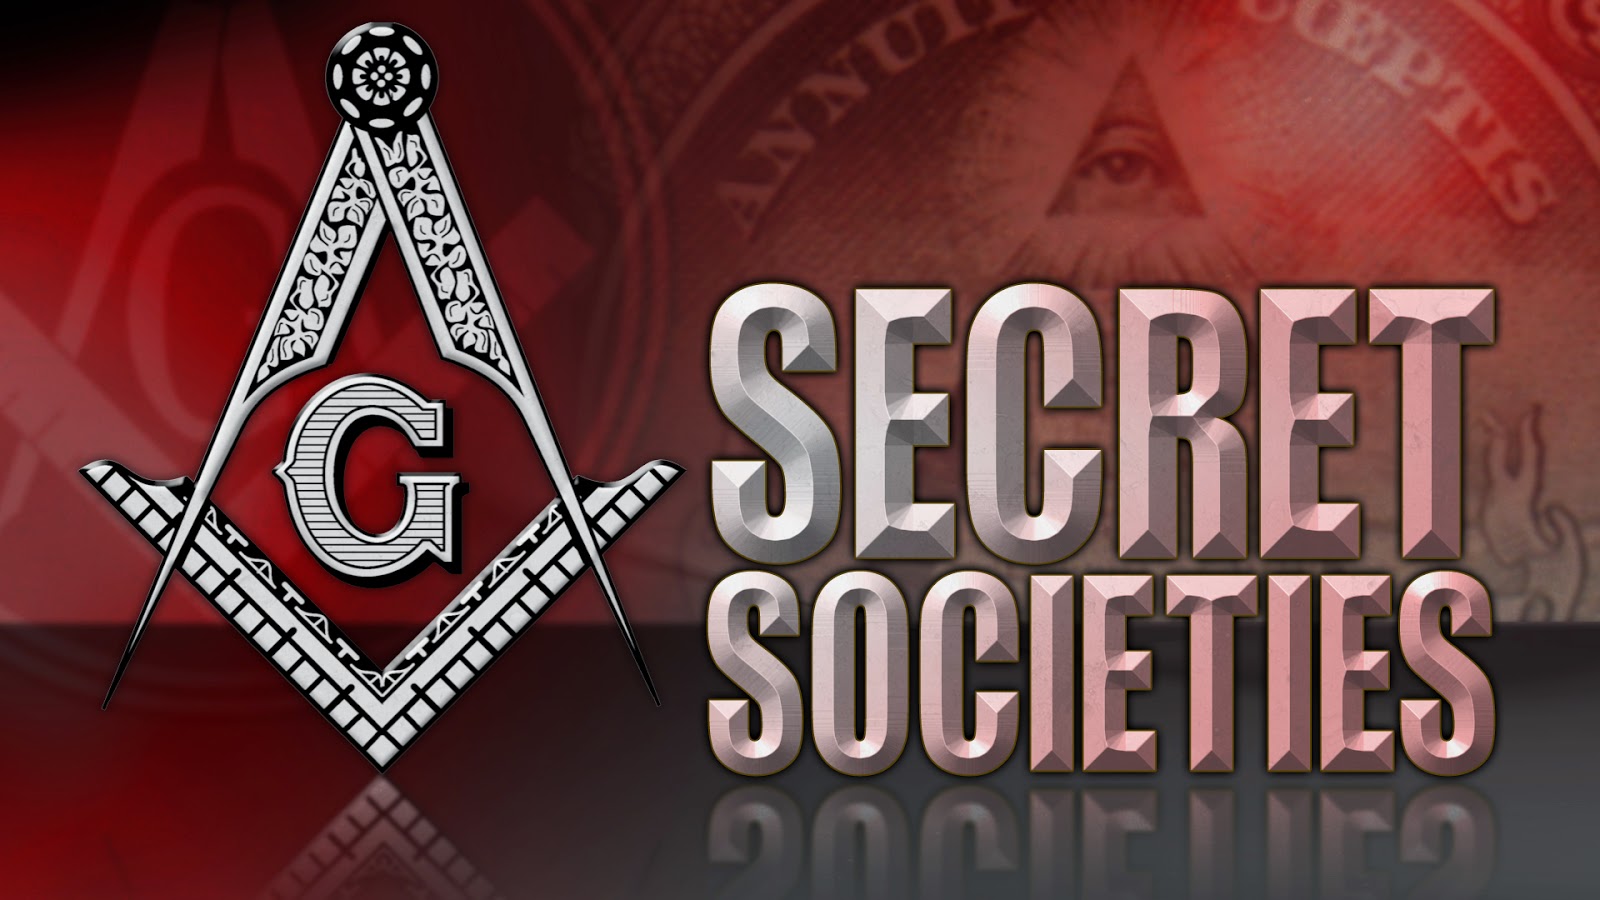 01-secret-societies-network